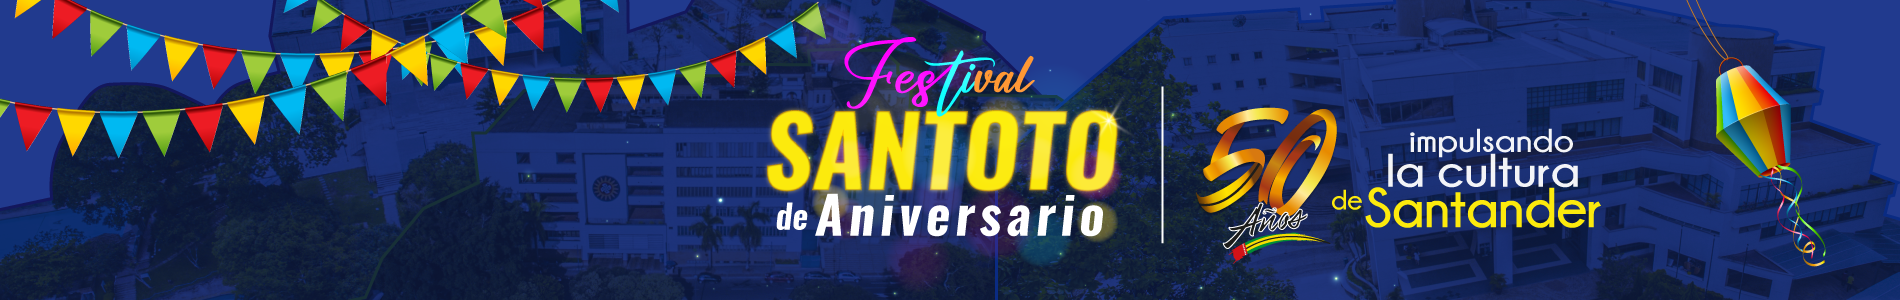 Evento FestivalSantoto